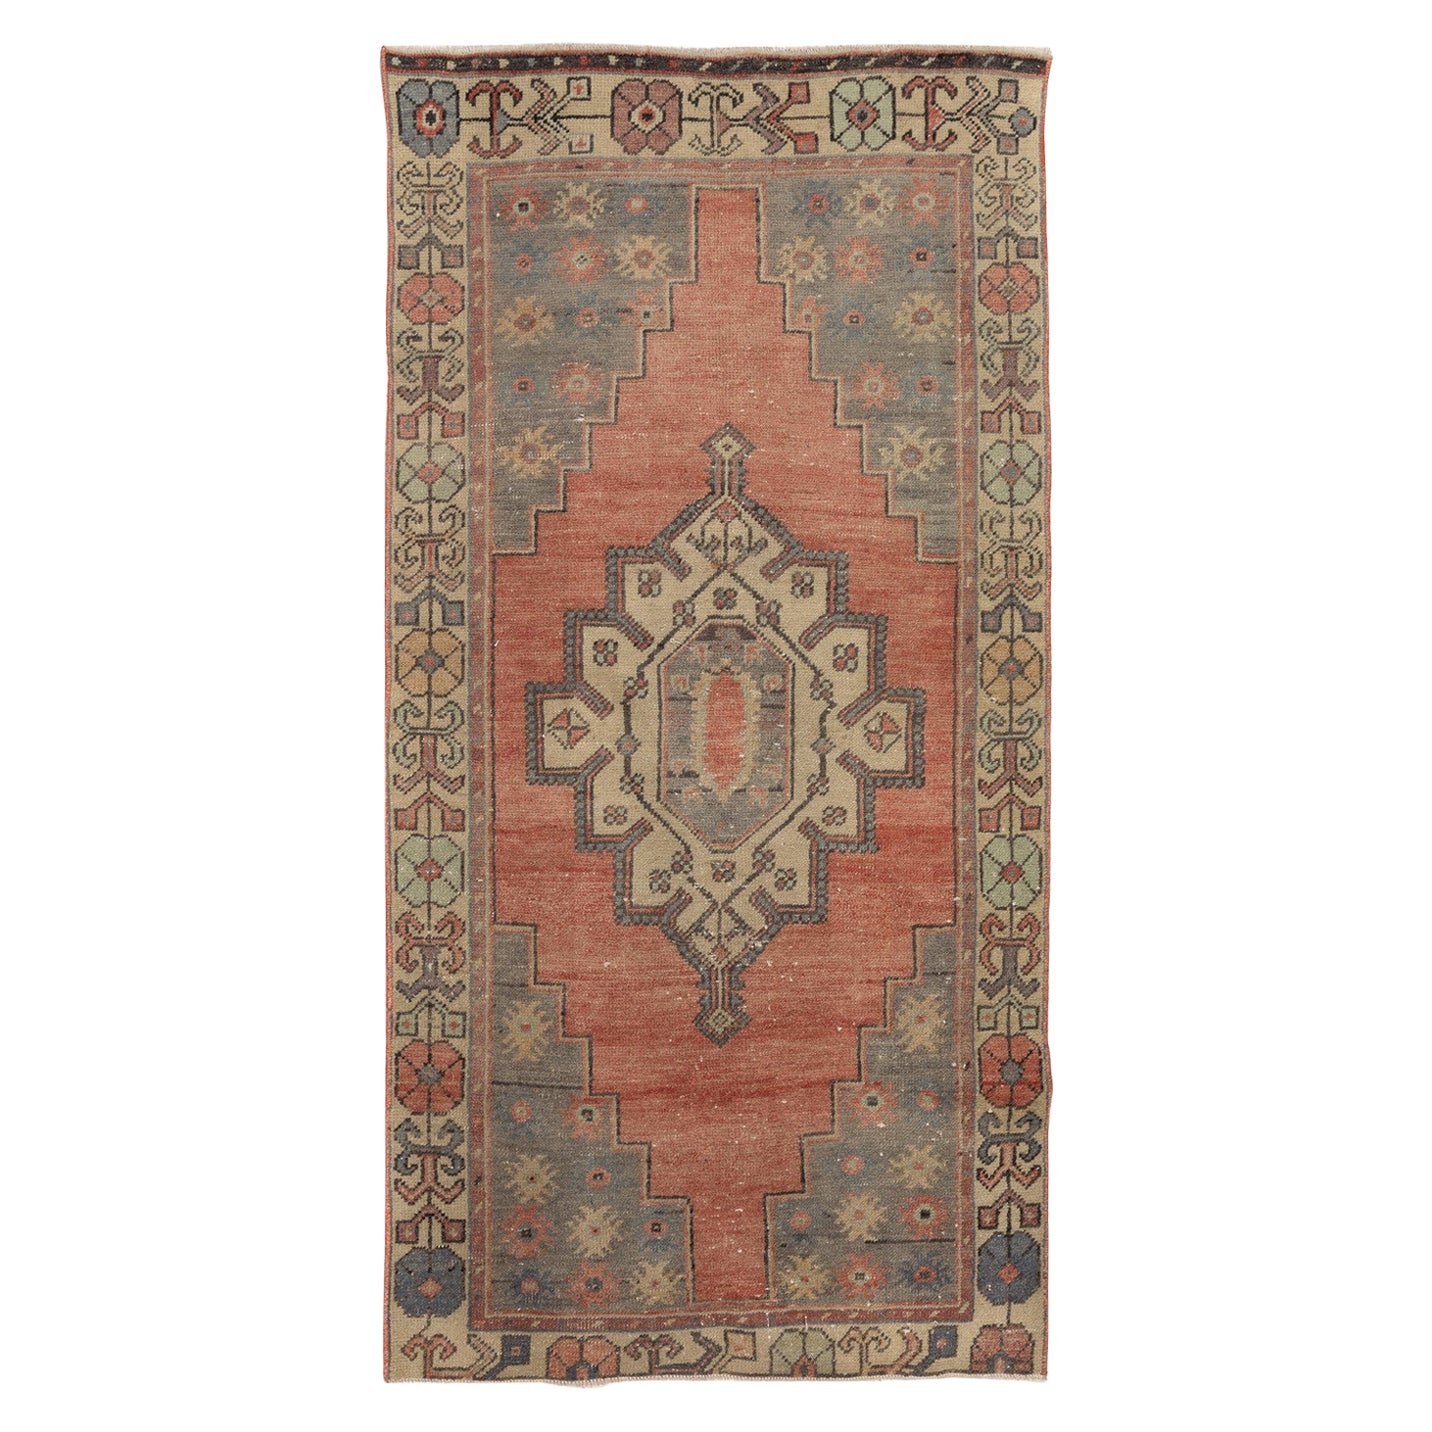 3,2x6 Ft Vintage Stammeskunst-Teppich. Weiche Wolle und natürliche Farben. Türkischer Teppich